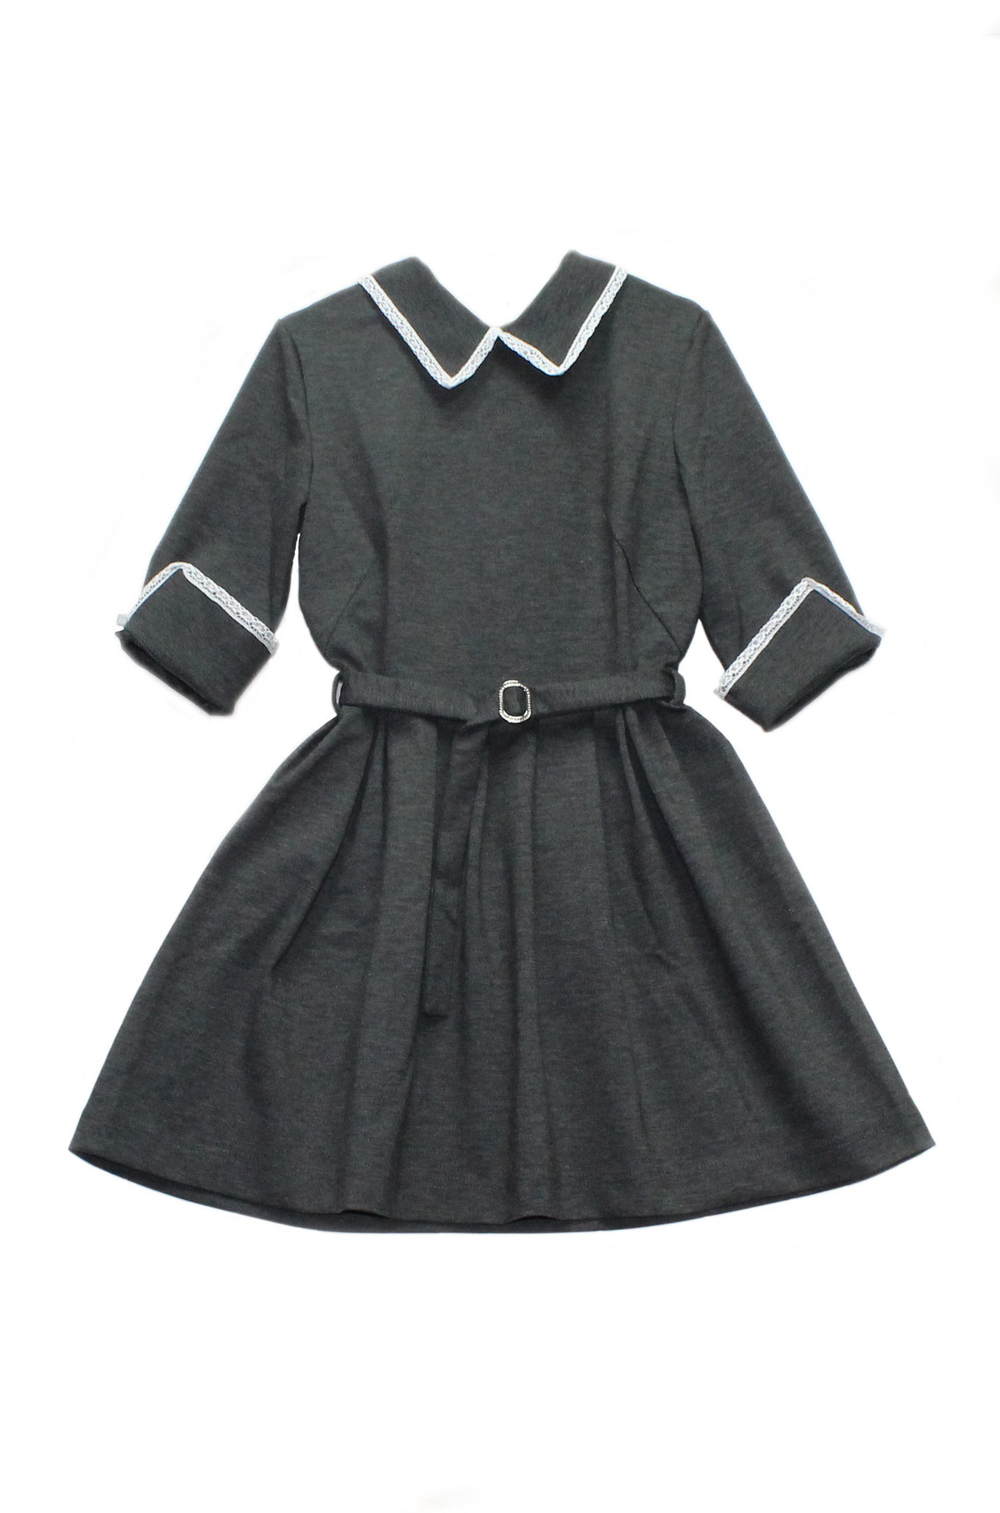 Пт-23,0 Баловень Школьное платье для девочки серое